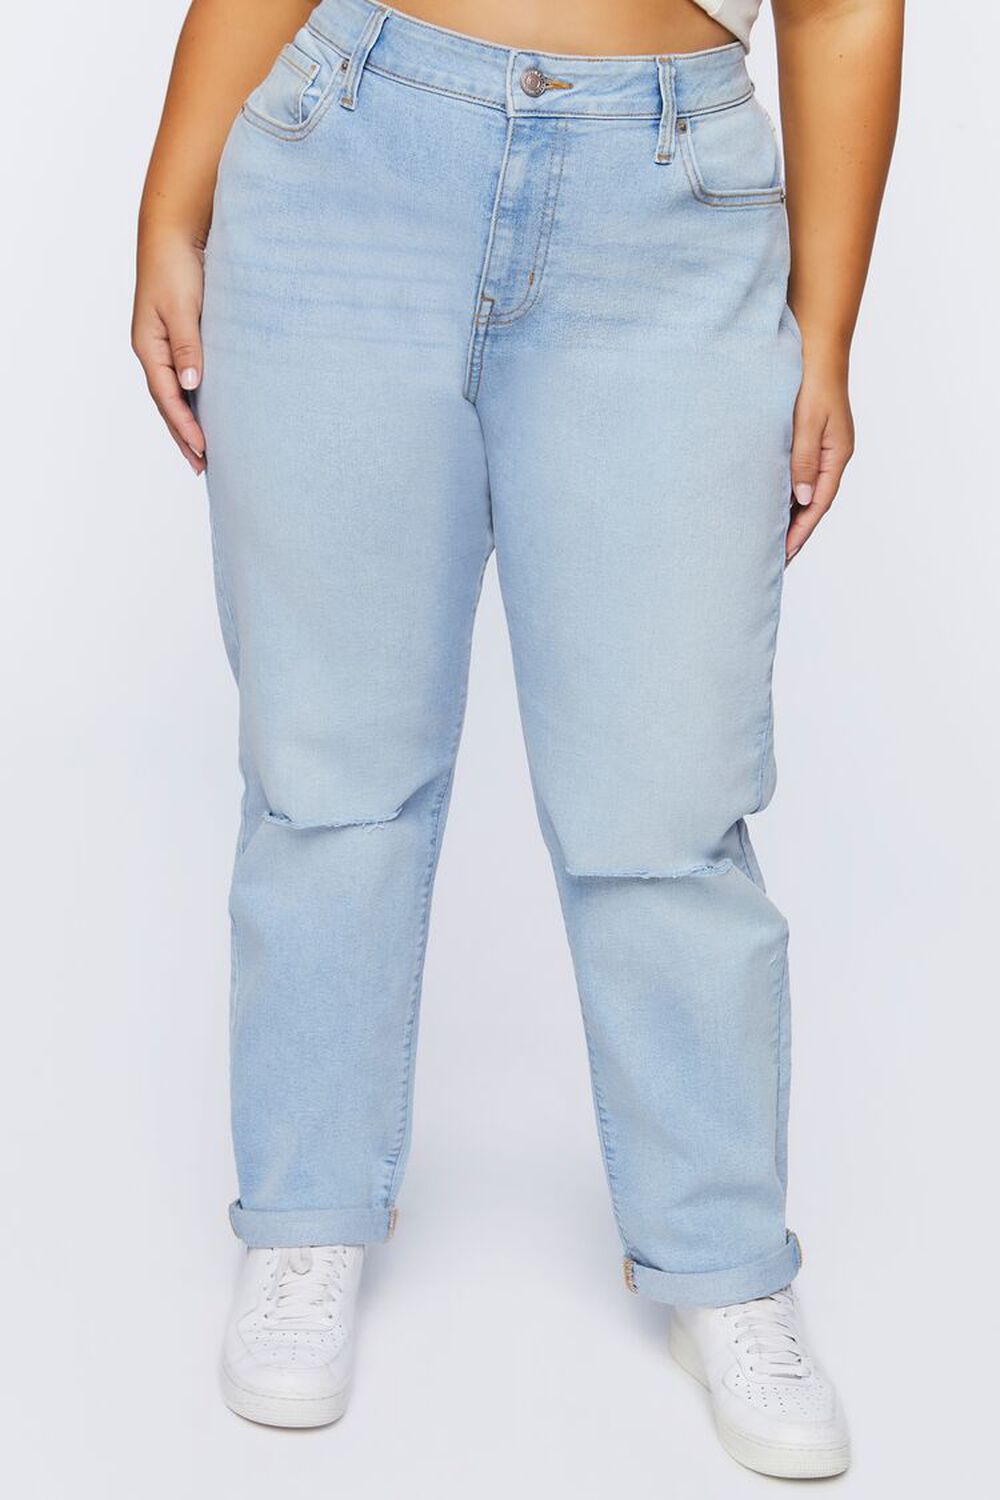 Мешковатые потертые джинсы больших размеров Forever 21, деним